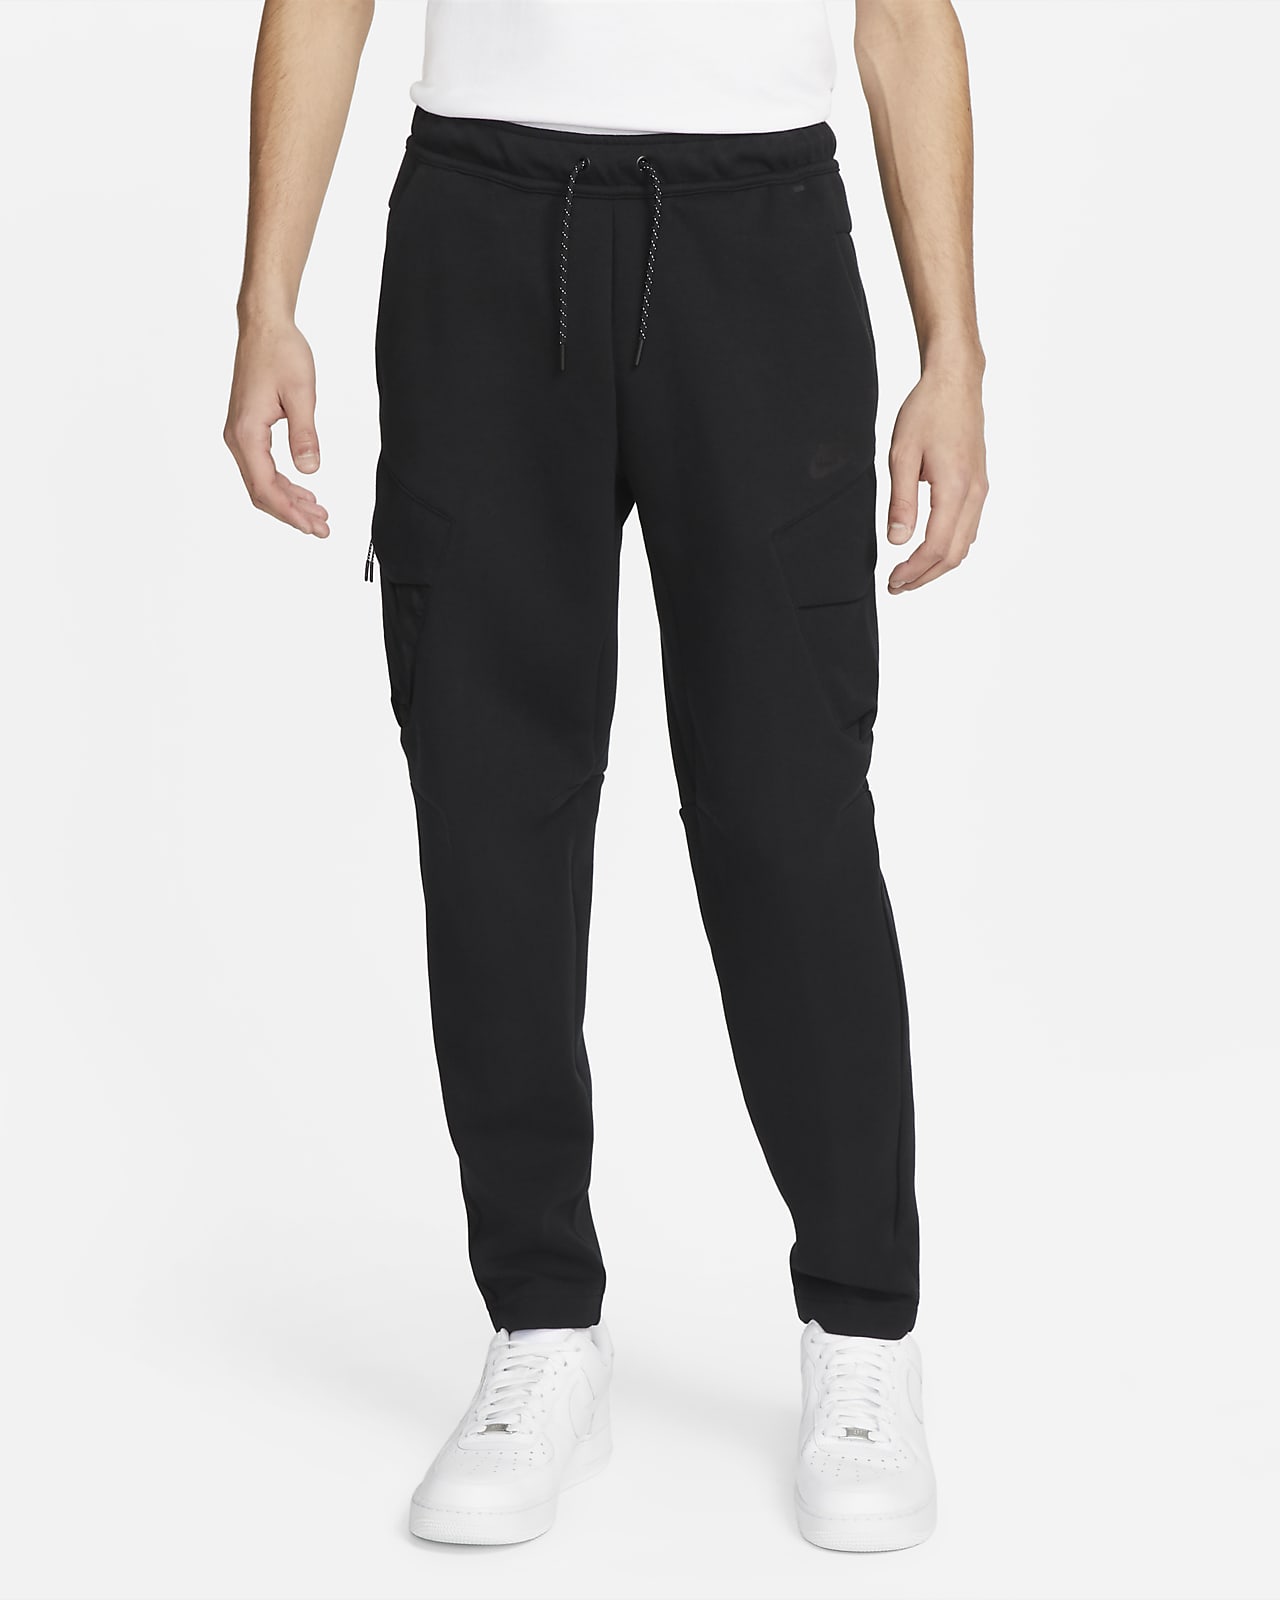 Nike Sportswear Tech Fleece Men's Utility Trousers